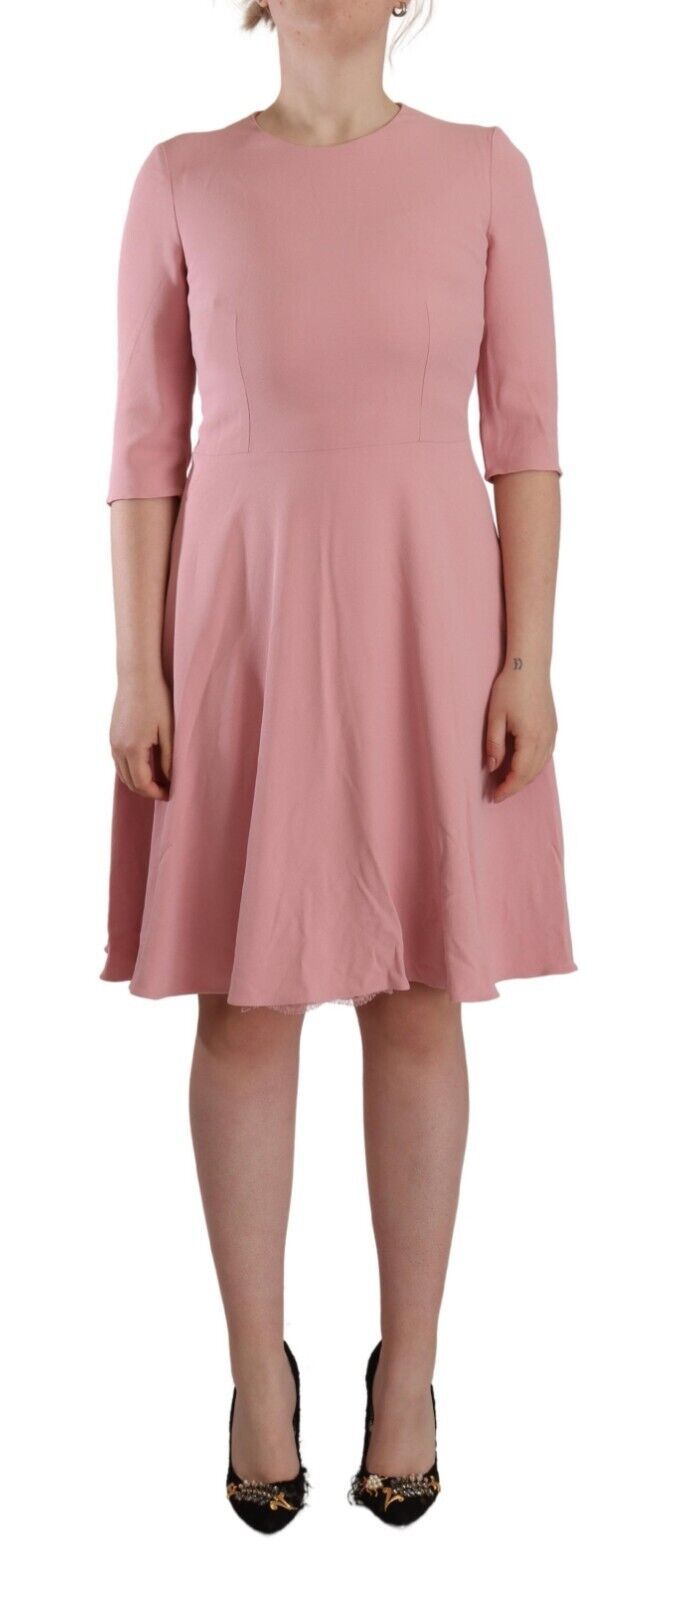 Elegant Pink A-Line Knee Length Dress